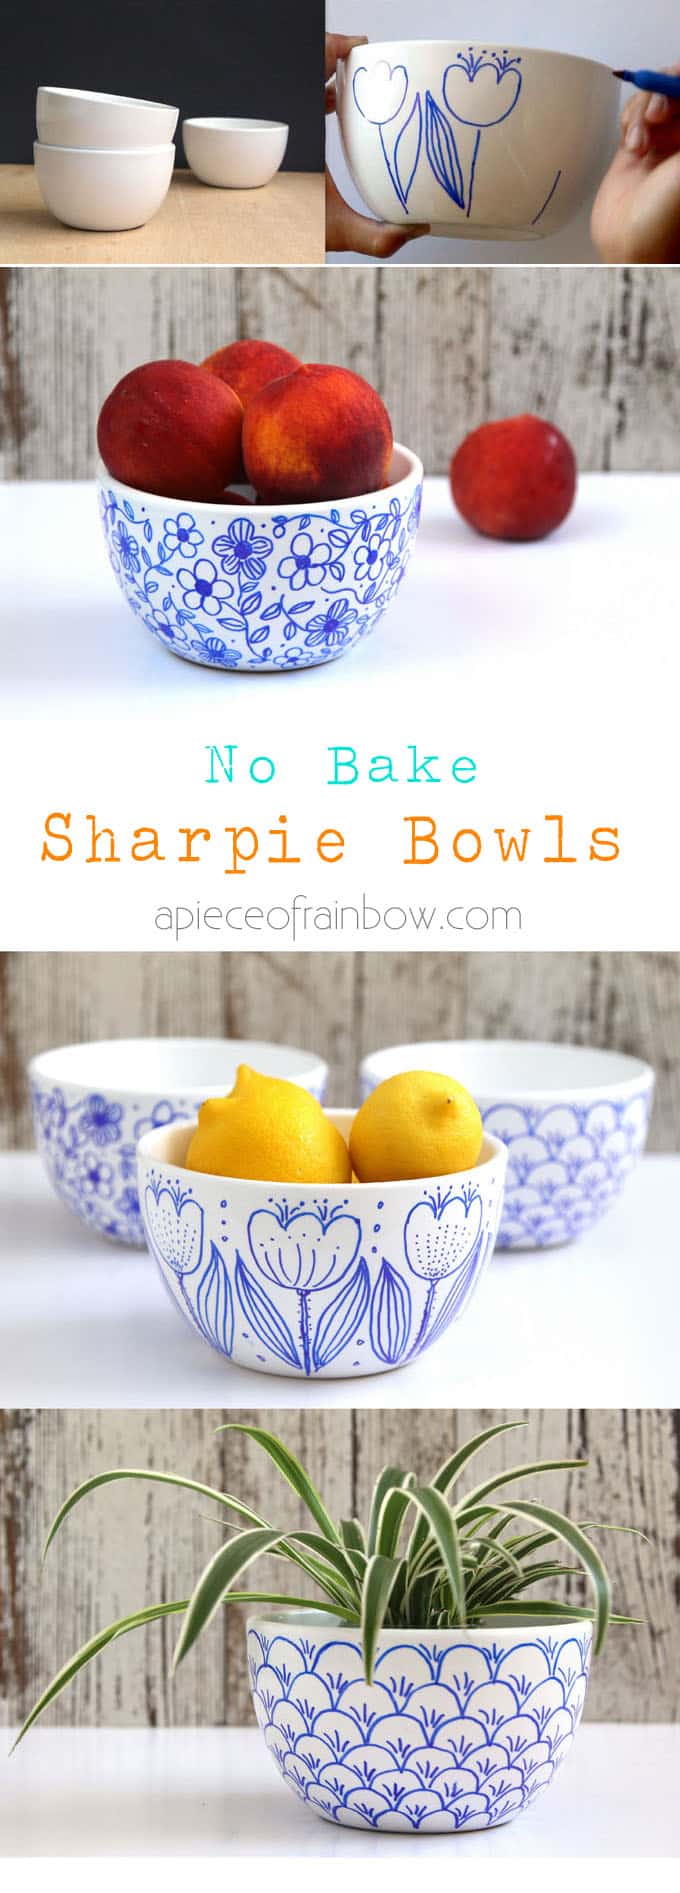 No-Bake-Sharpie-Bowls-apieceofrainbow (1)